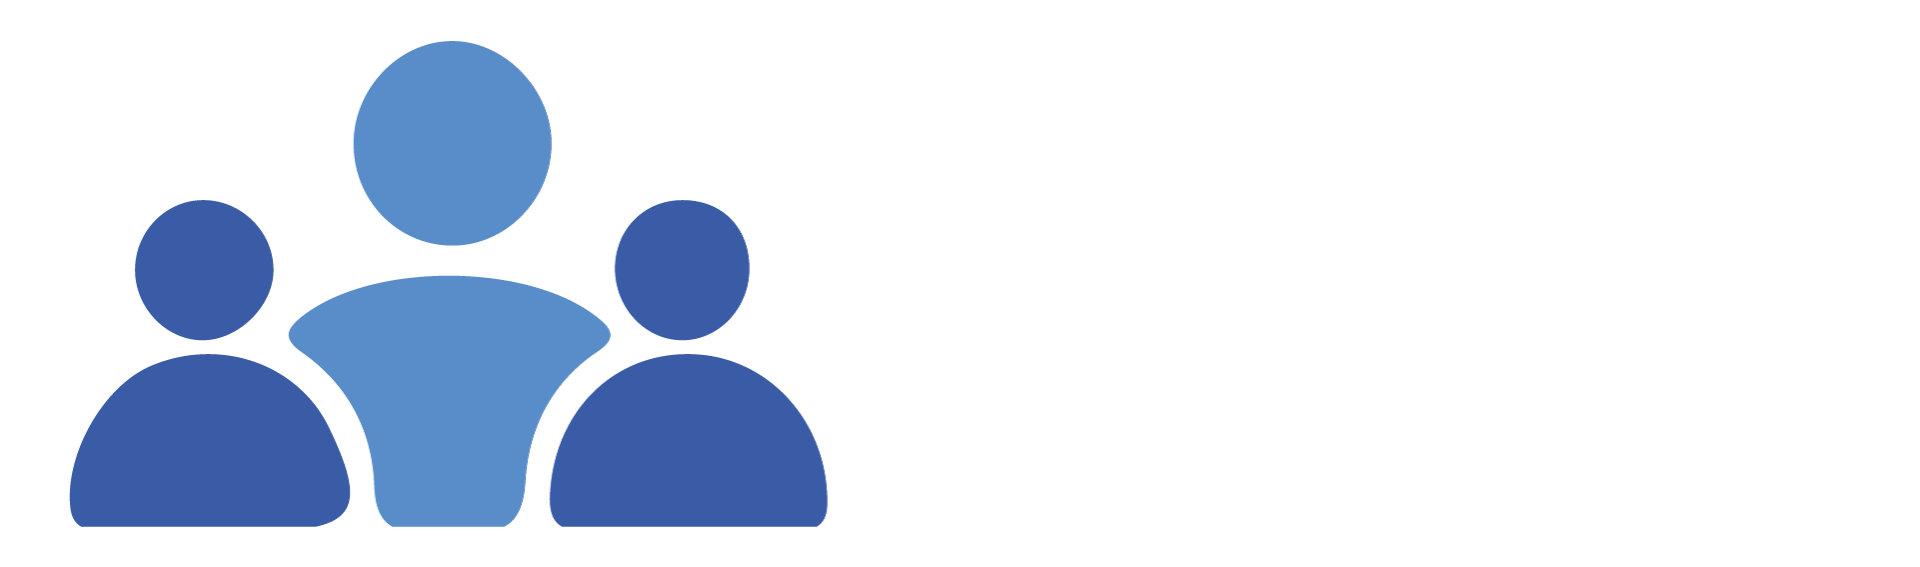 27603452-0-people-logo.png